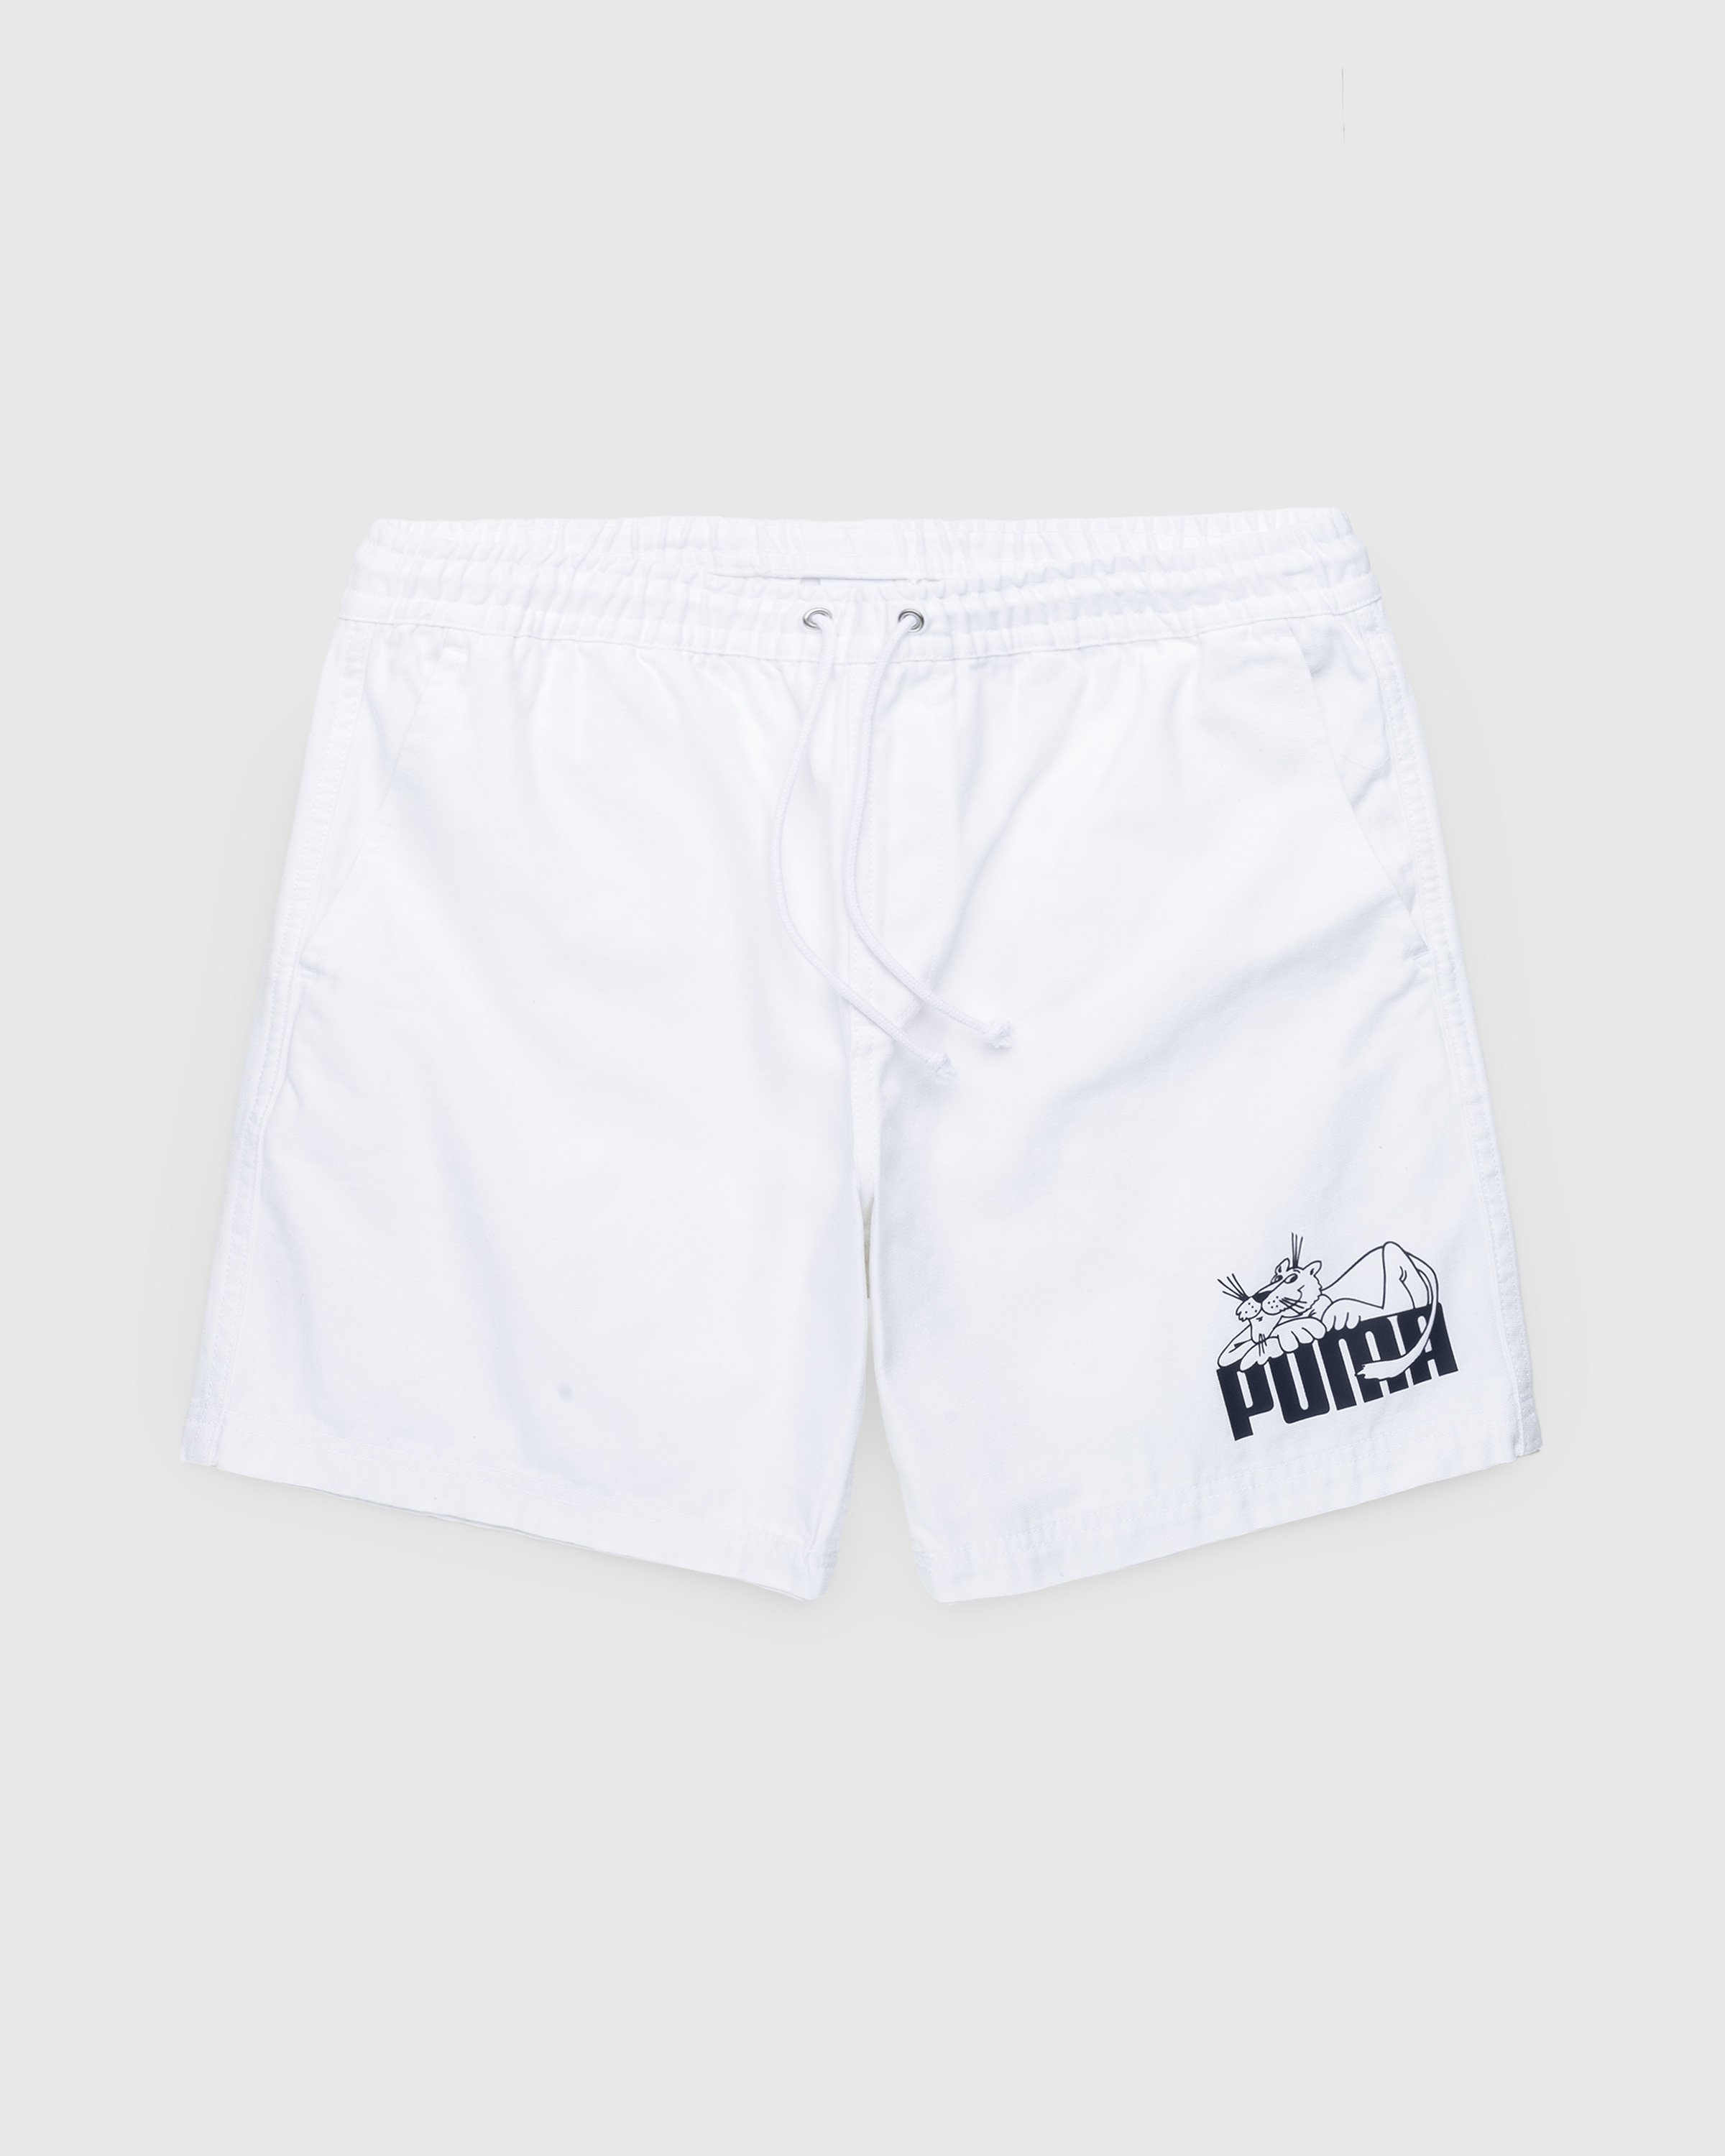 Puma - NOAH Shorts - Clothing - White - Image 1